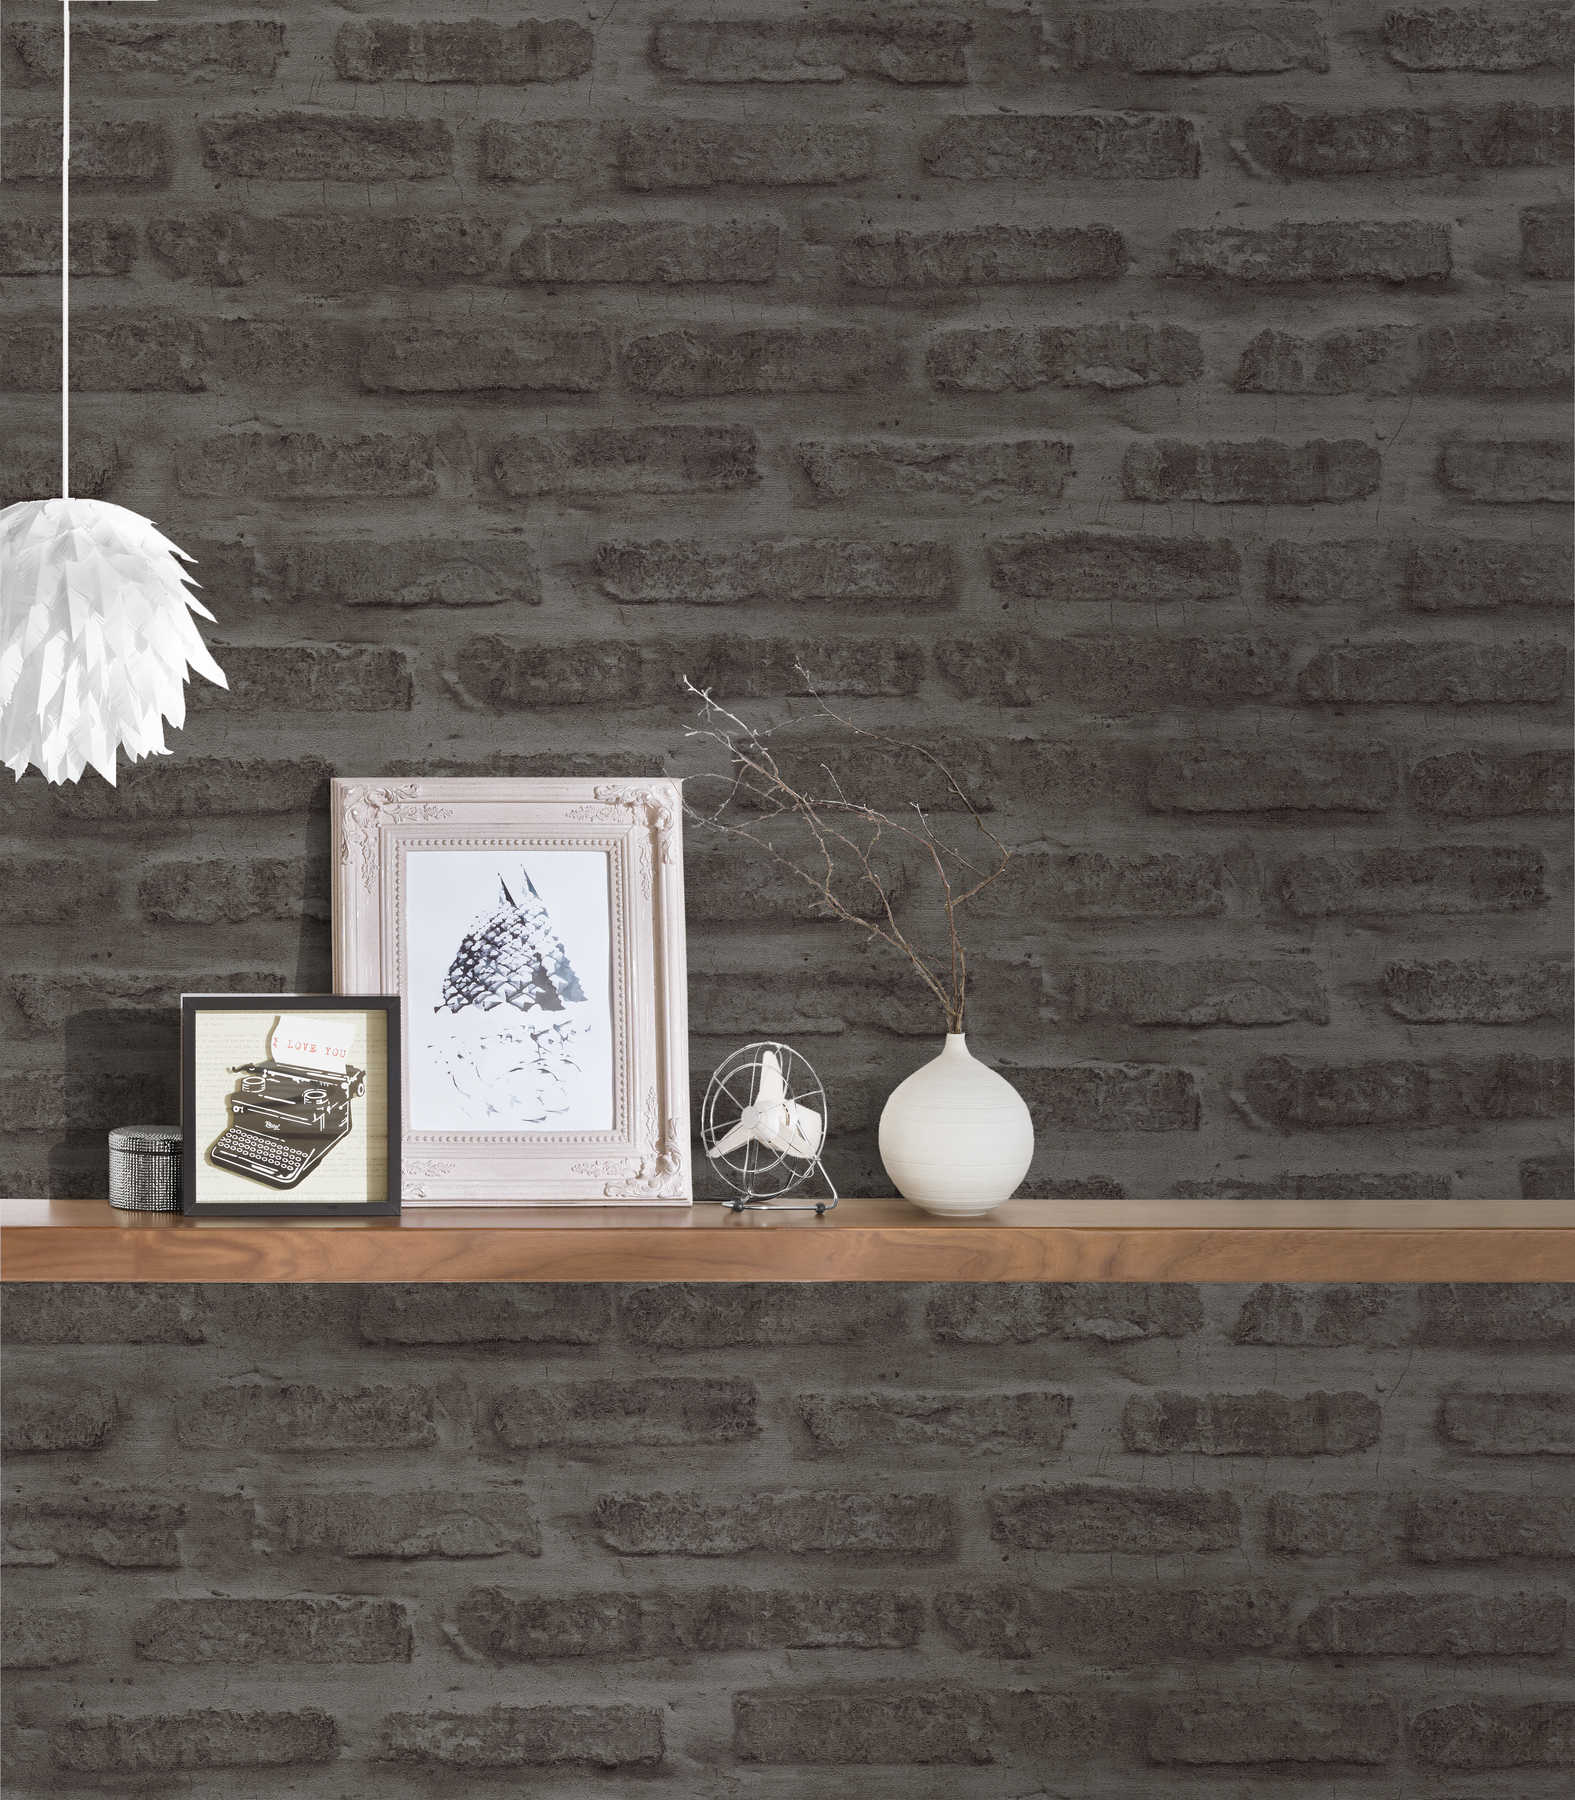             Antraciet vliesbehang met steenlook & bakstenen muur - grijs, zwart
        